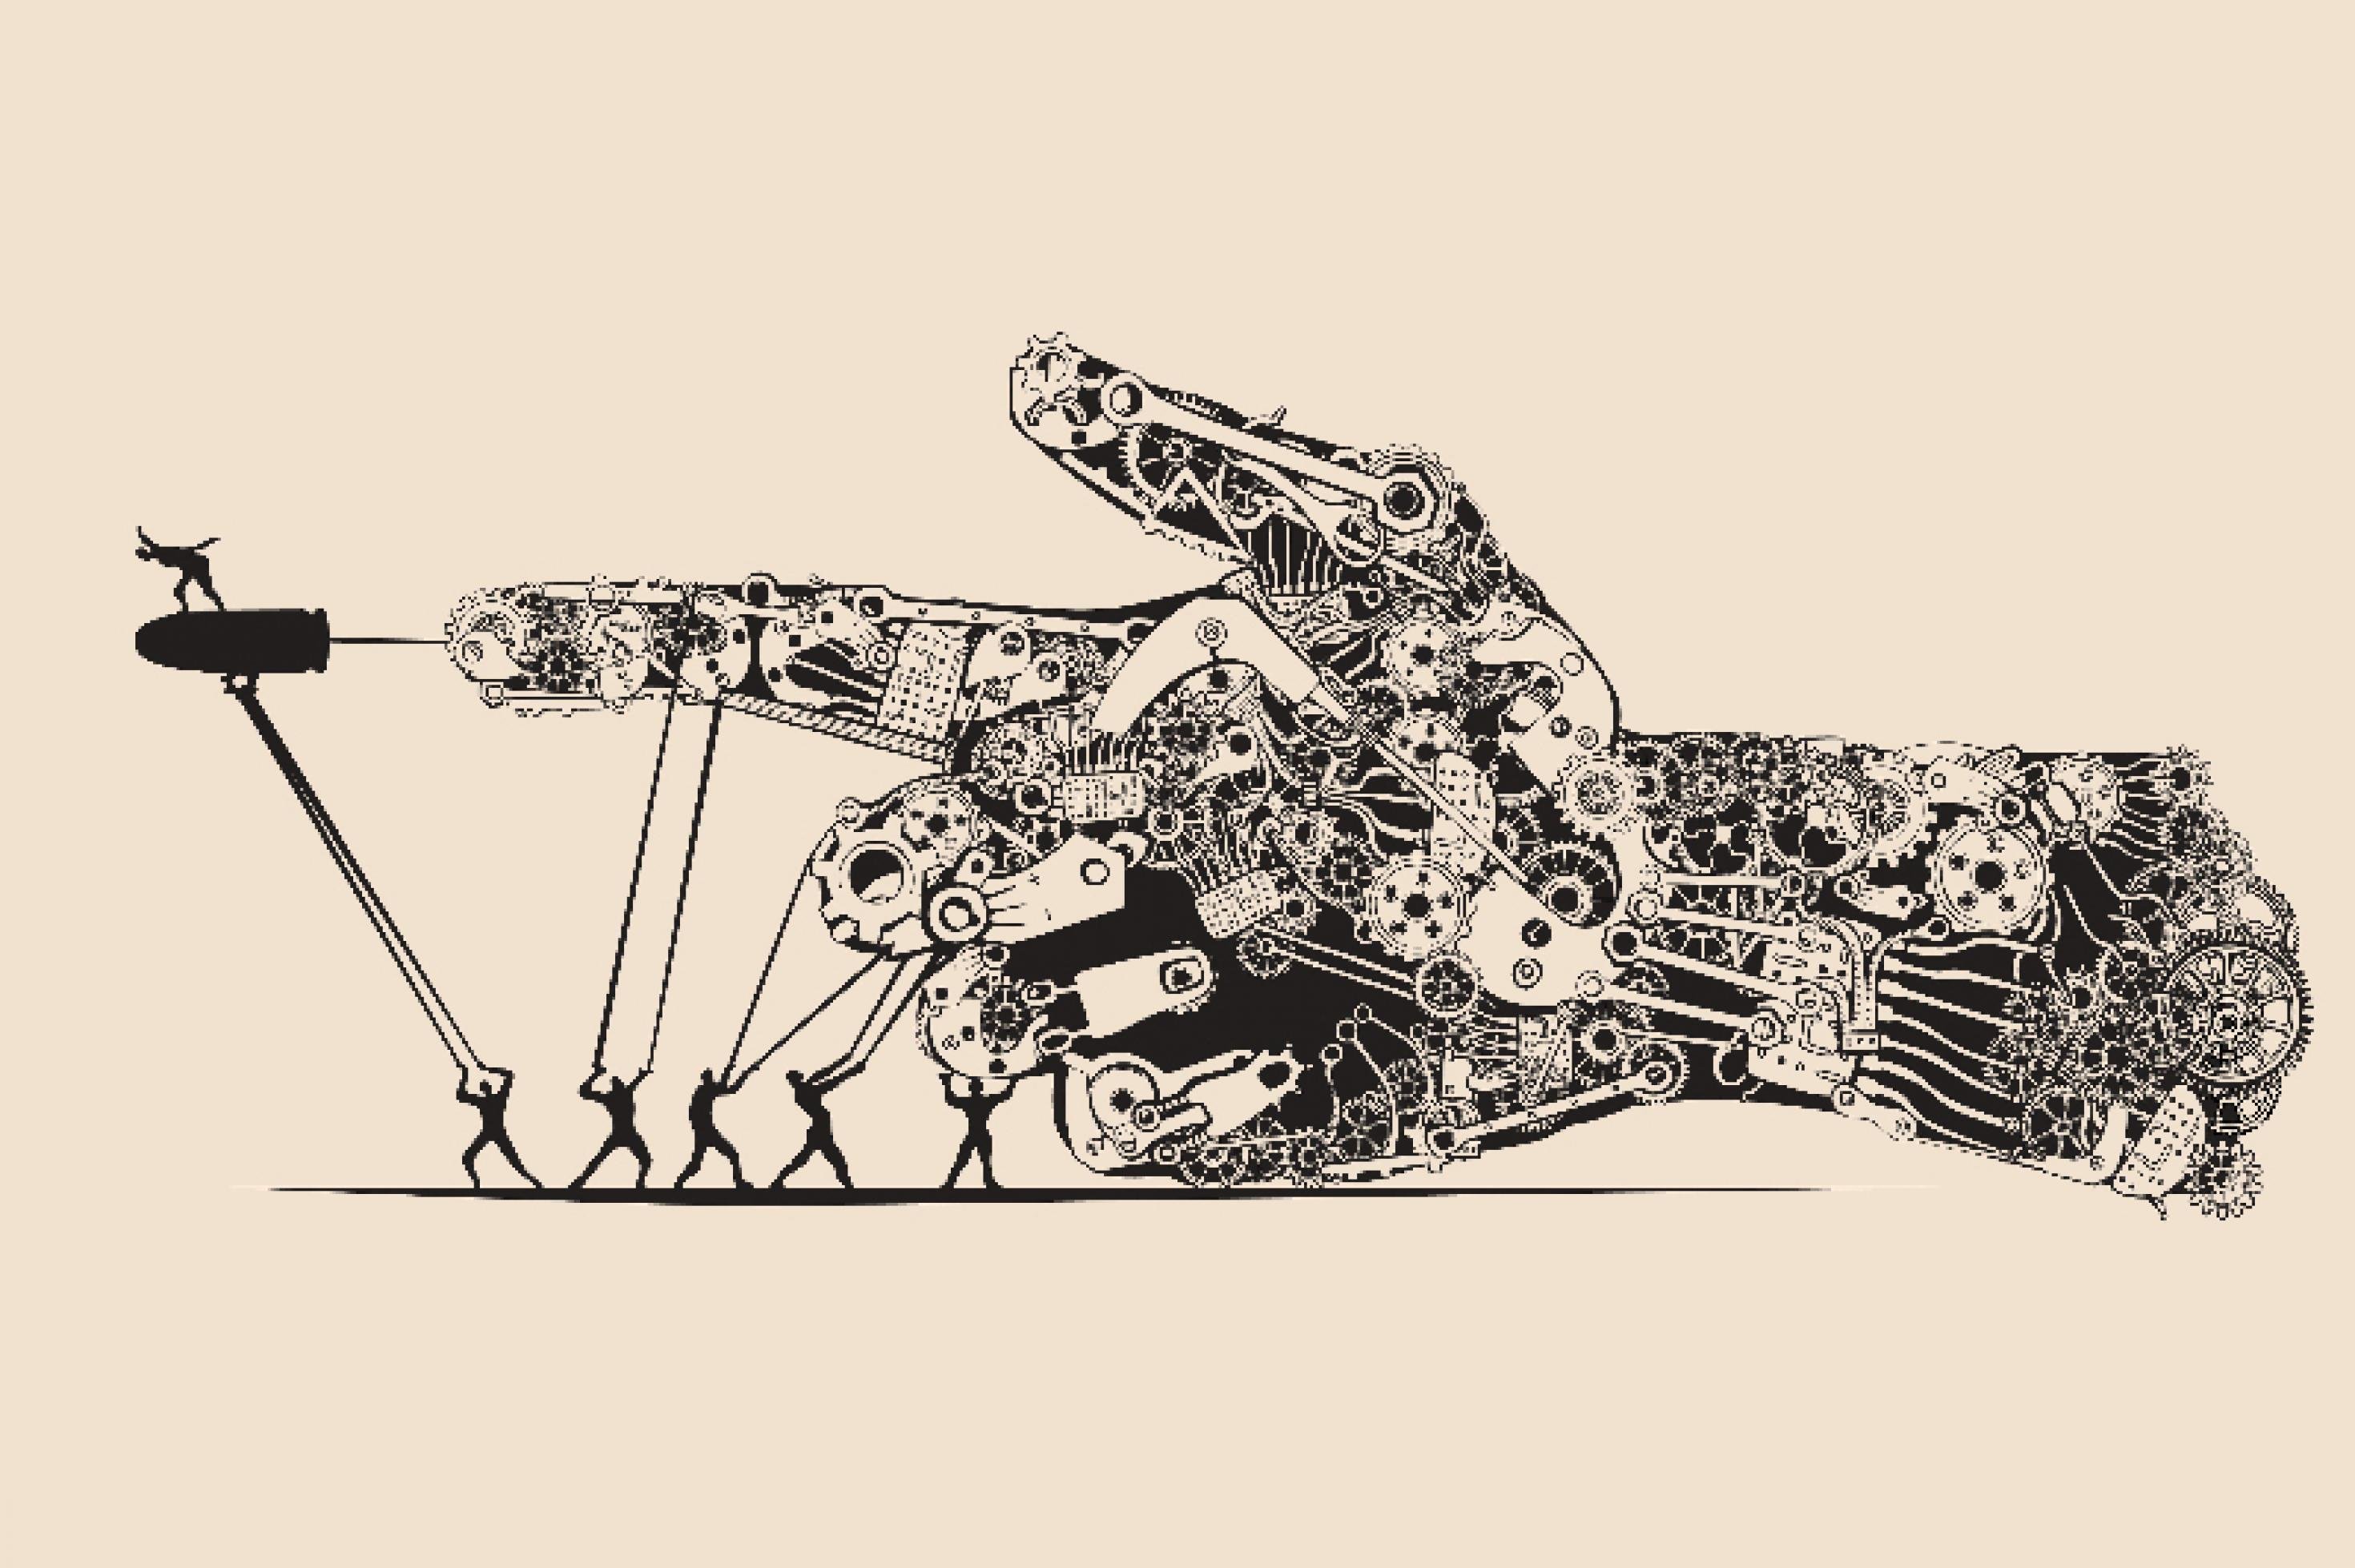 Eine Zeichnung einer maschinellen Hand mit vielen Rädchen und Mechanismen, stabilisiert von Menschen.